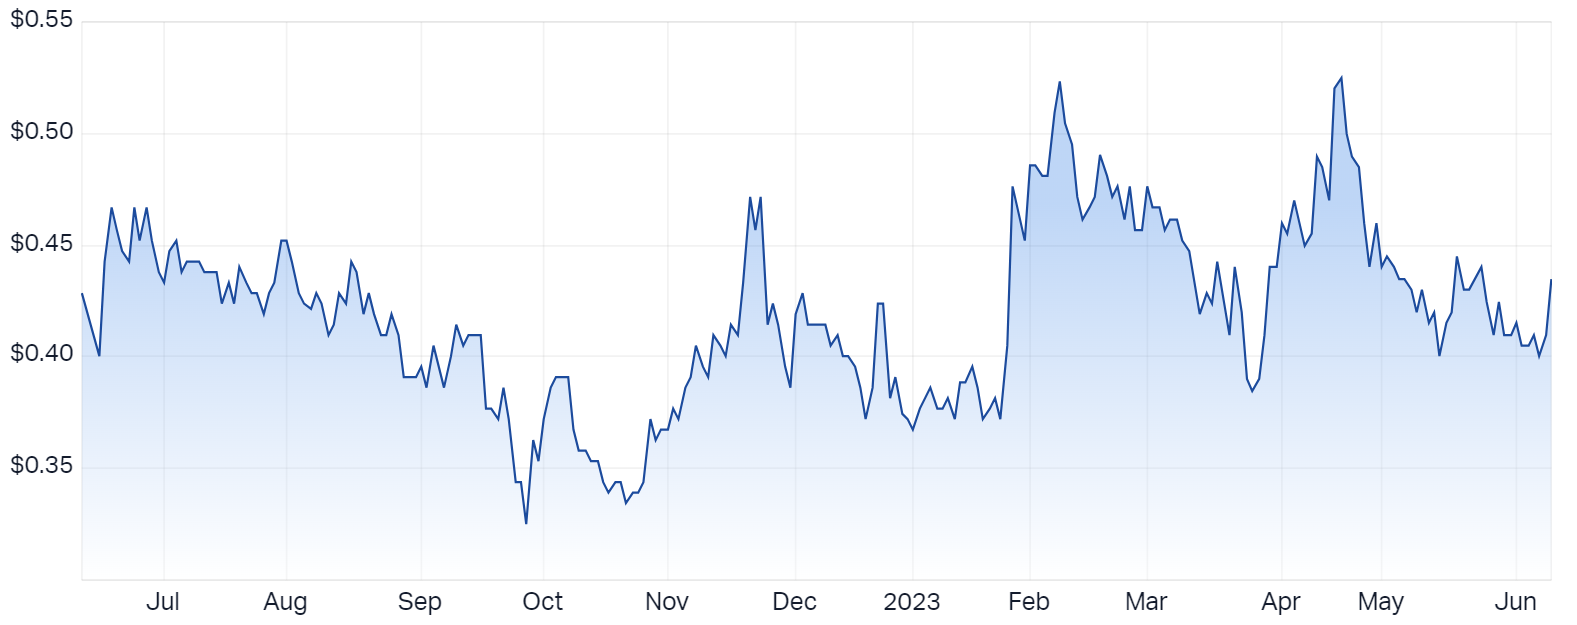 Sovereign Metals Ltd (ASX SVM) Share Price - Market Index